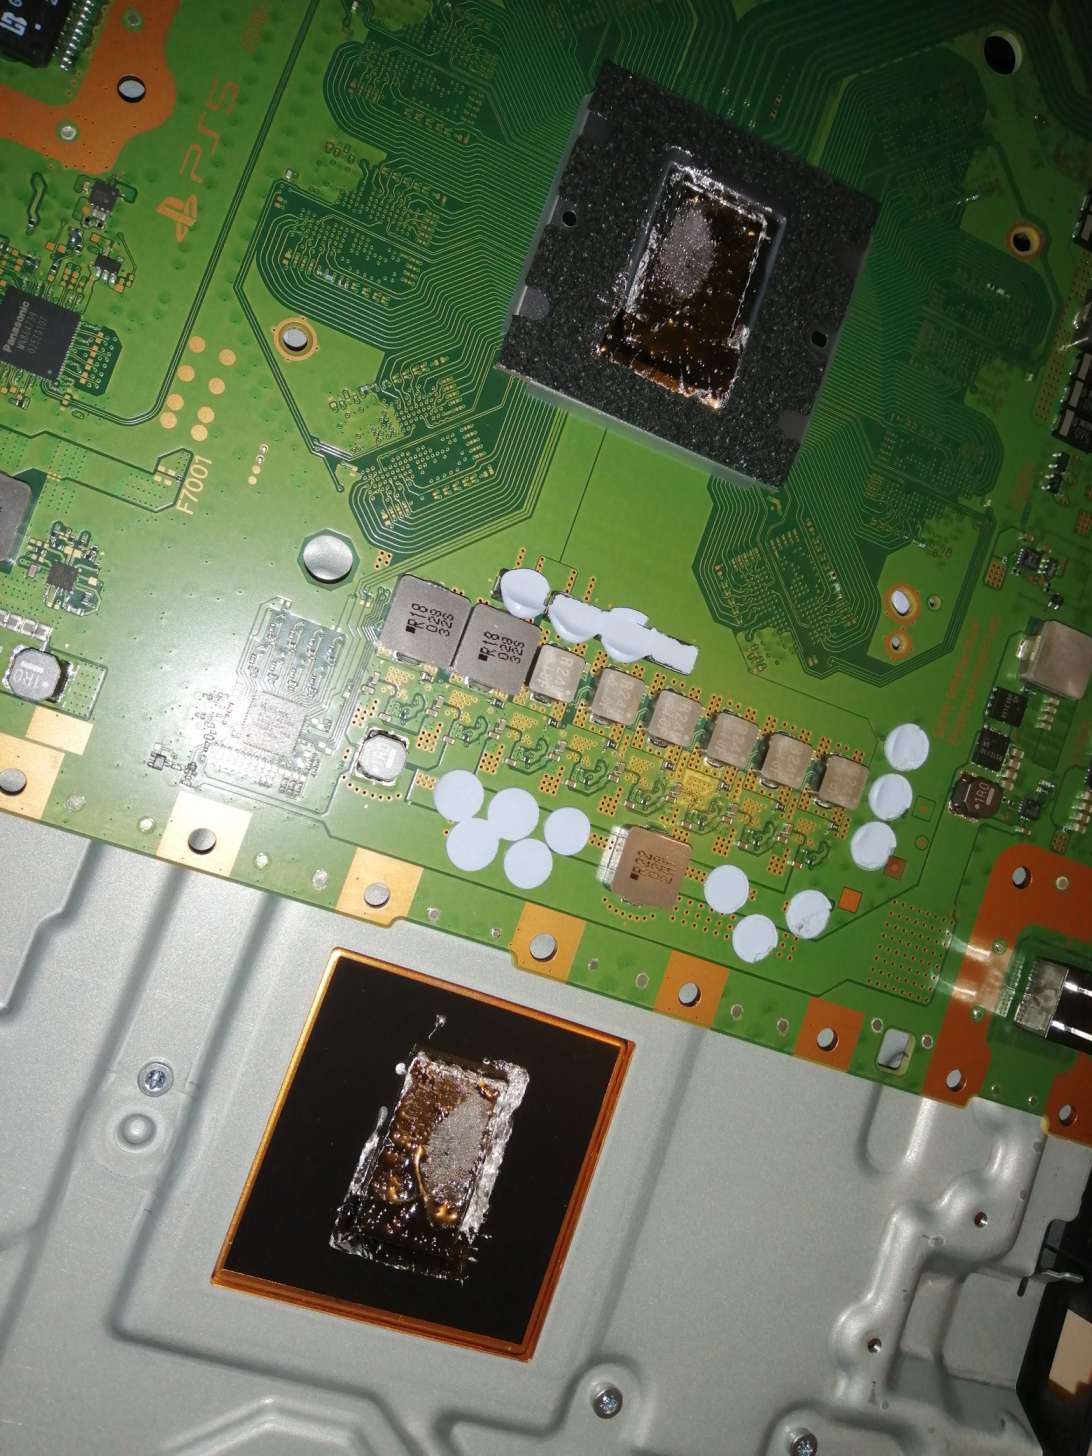 شایعه: عمودی قرار دادن PS5 ممکن است به آن آسیب وارد کند